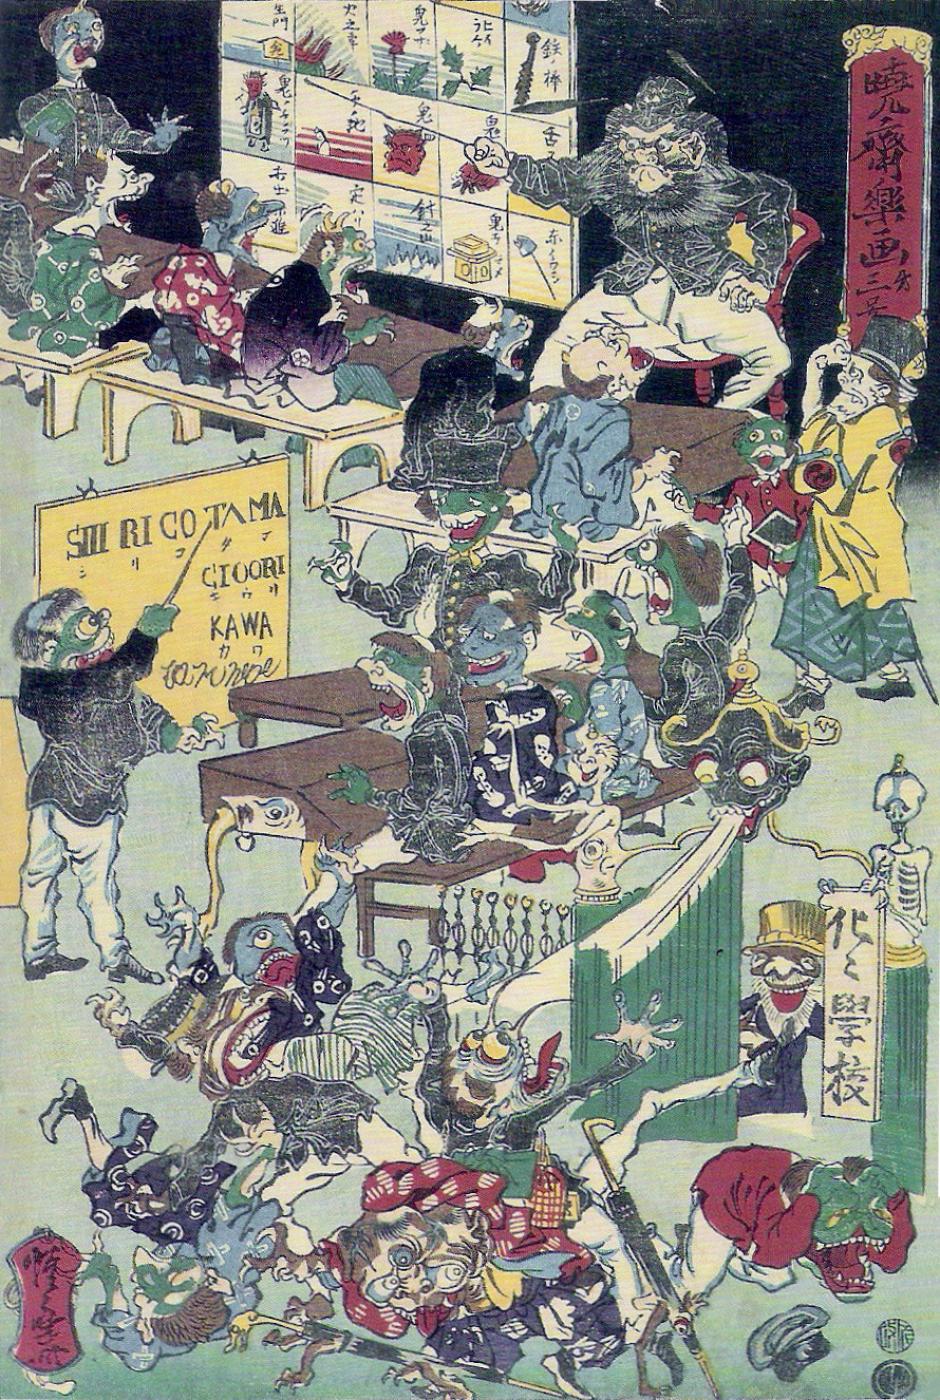 Bake-Bake Gakkō  o “Escuela para Fantasmas”, por Kyōsai. Caricatura de la decisión del gobierno Meiji de implantar un sistema de educación obligatoria